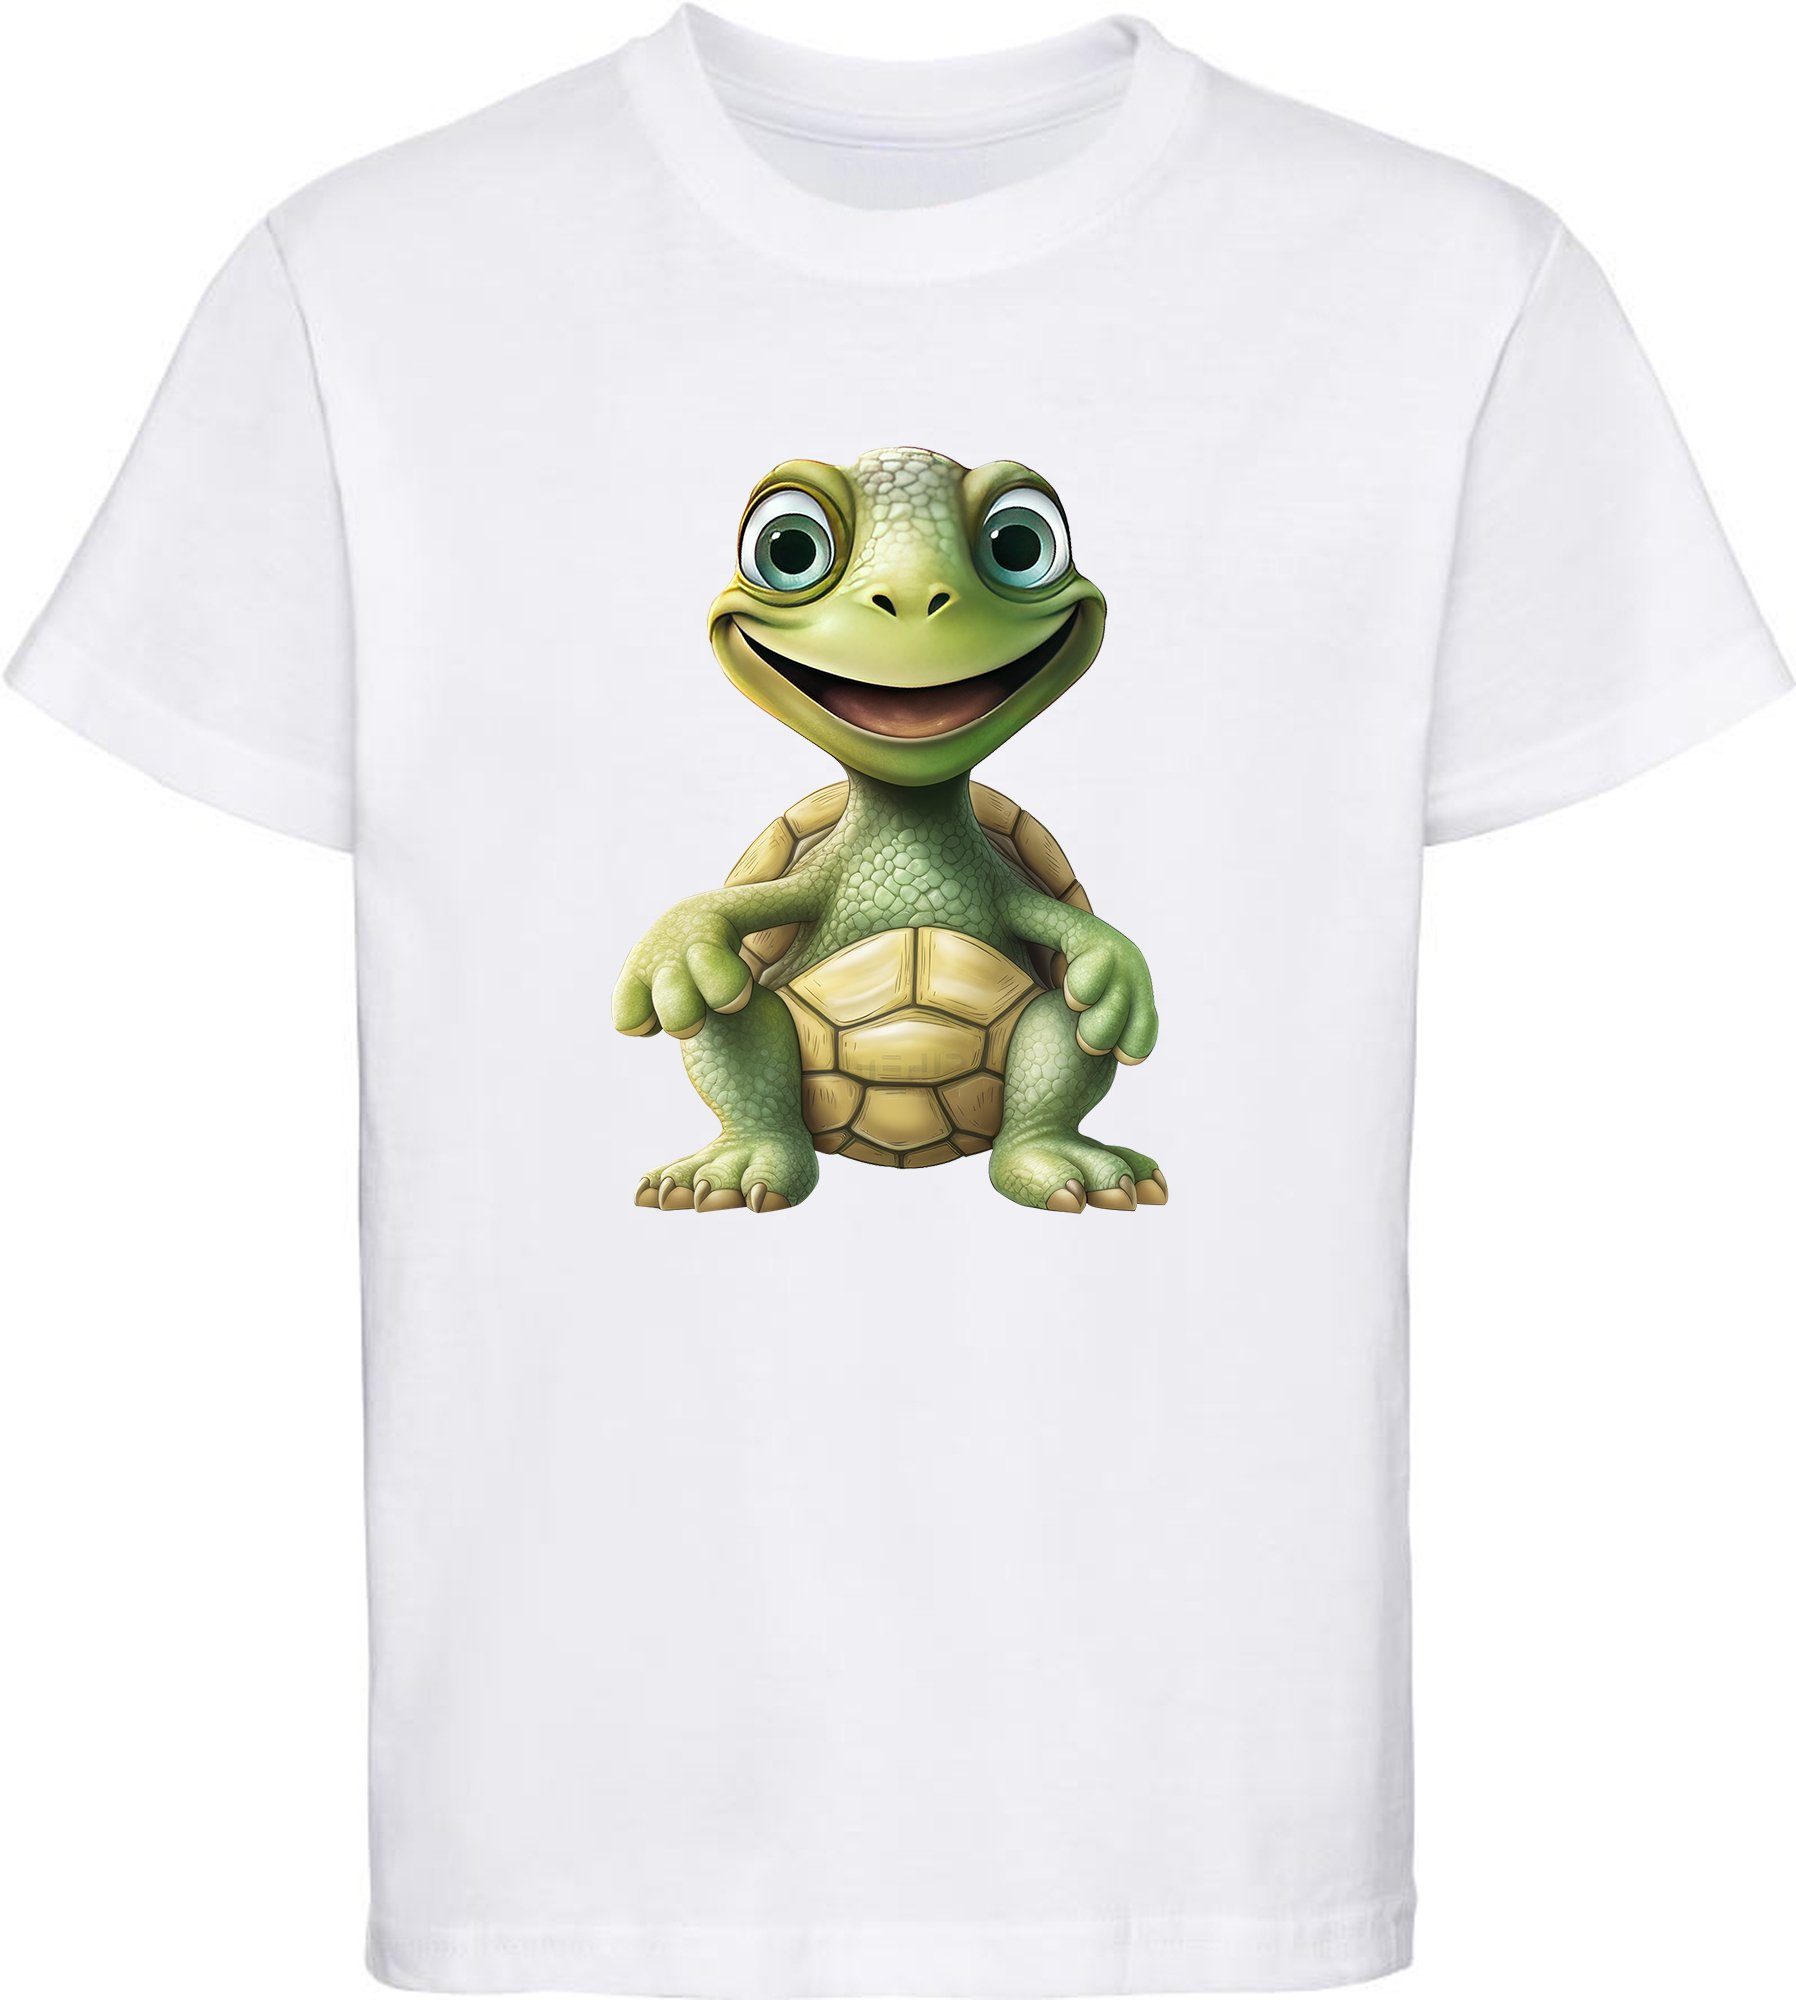 MyDesign24 T-Shirt Kinder Wildtier Print Shirt bedruckt - Baby Schildkröte Baumwollshirt mit Aufdruck, i279 weiss